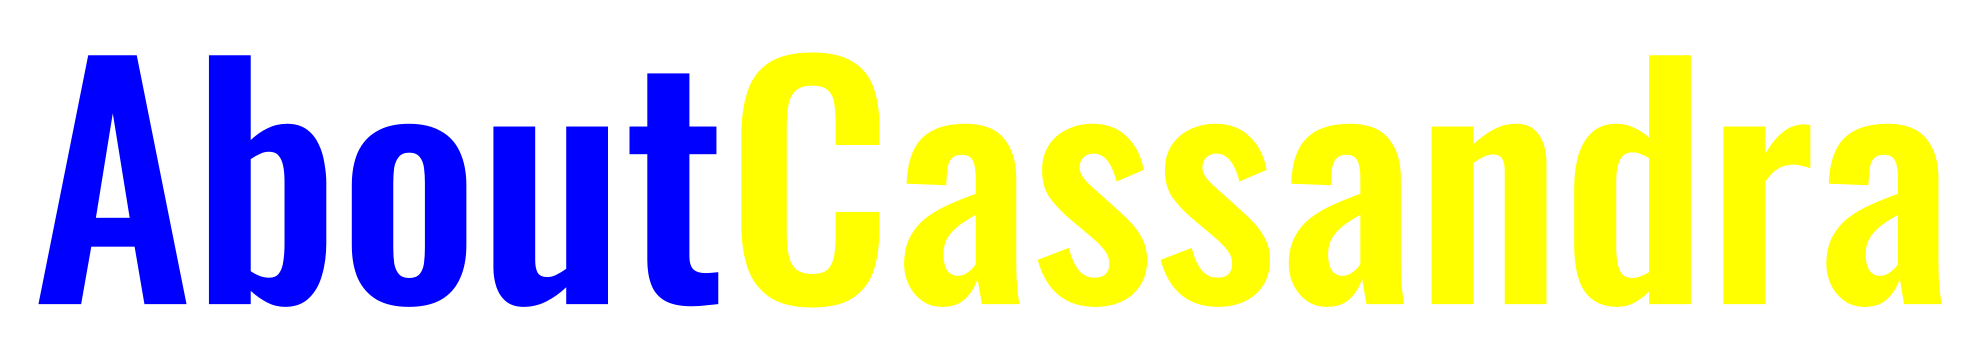 About Cassandra